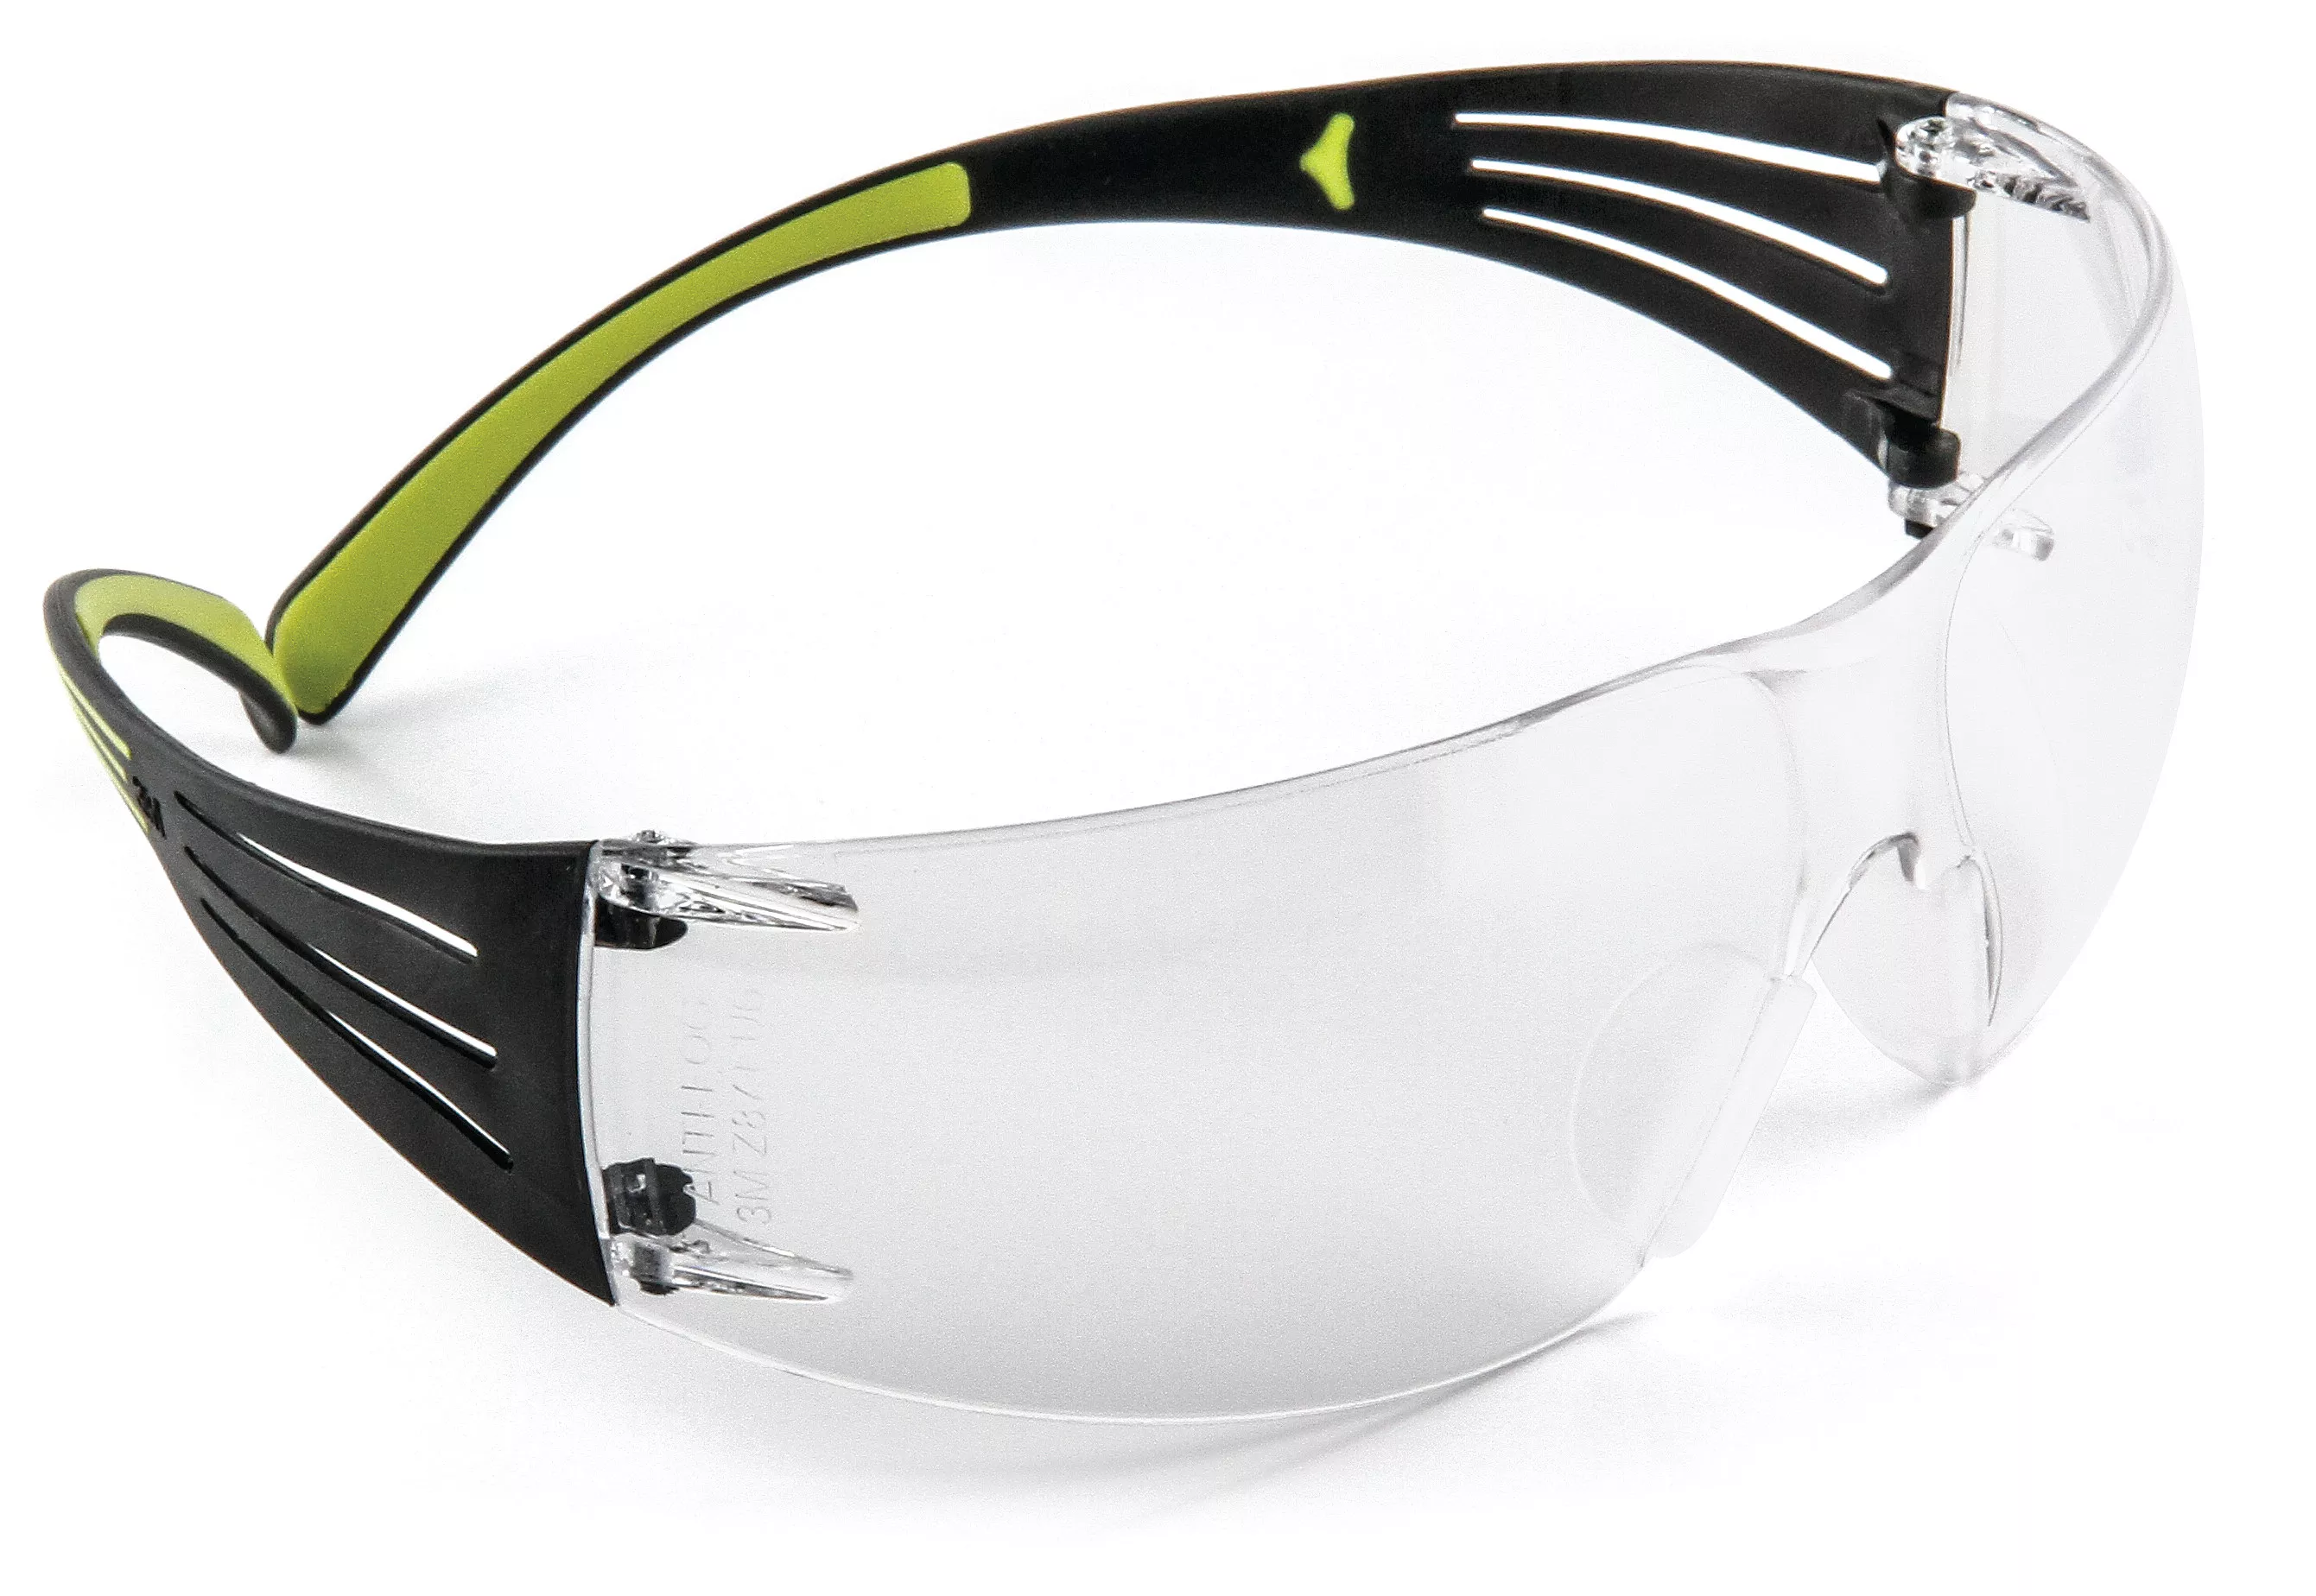 SKU 7100243511 | Peltor™ Sport SecureFit™ Safety Eyewear SF400-PC-9